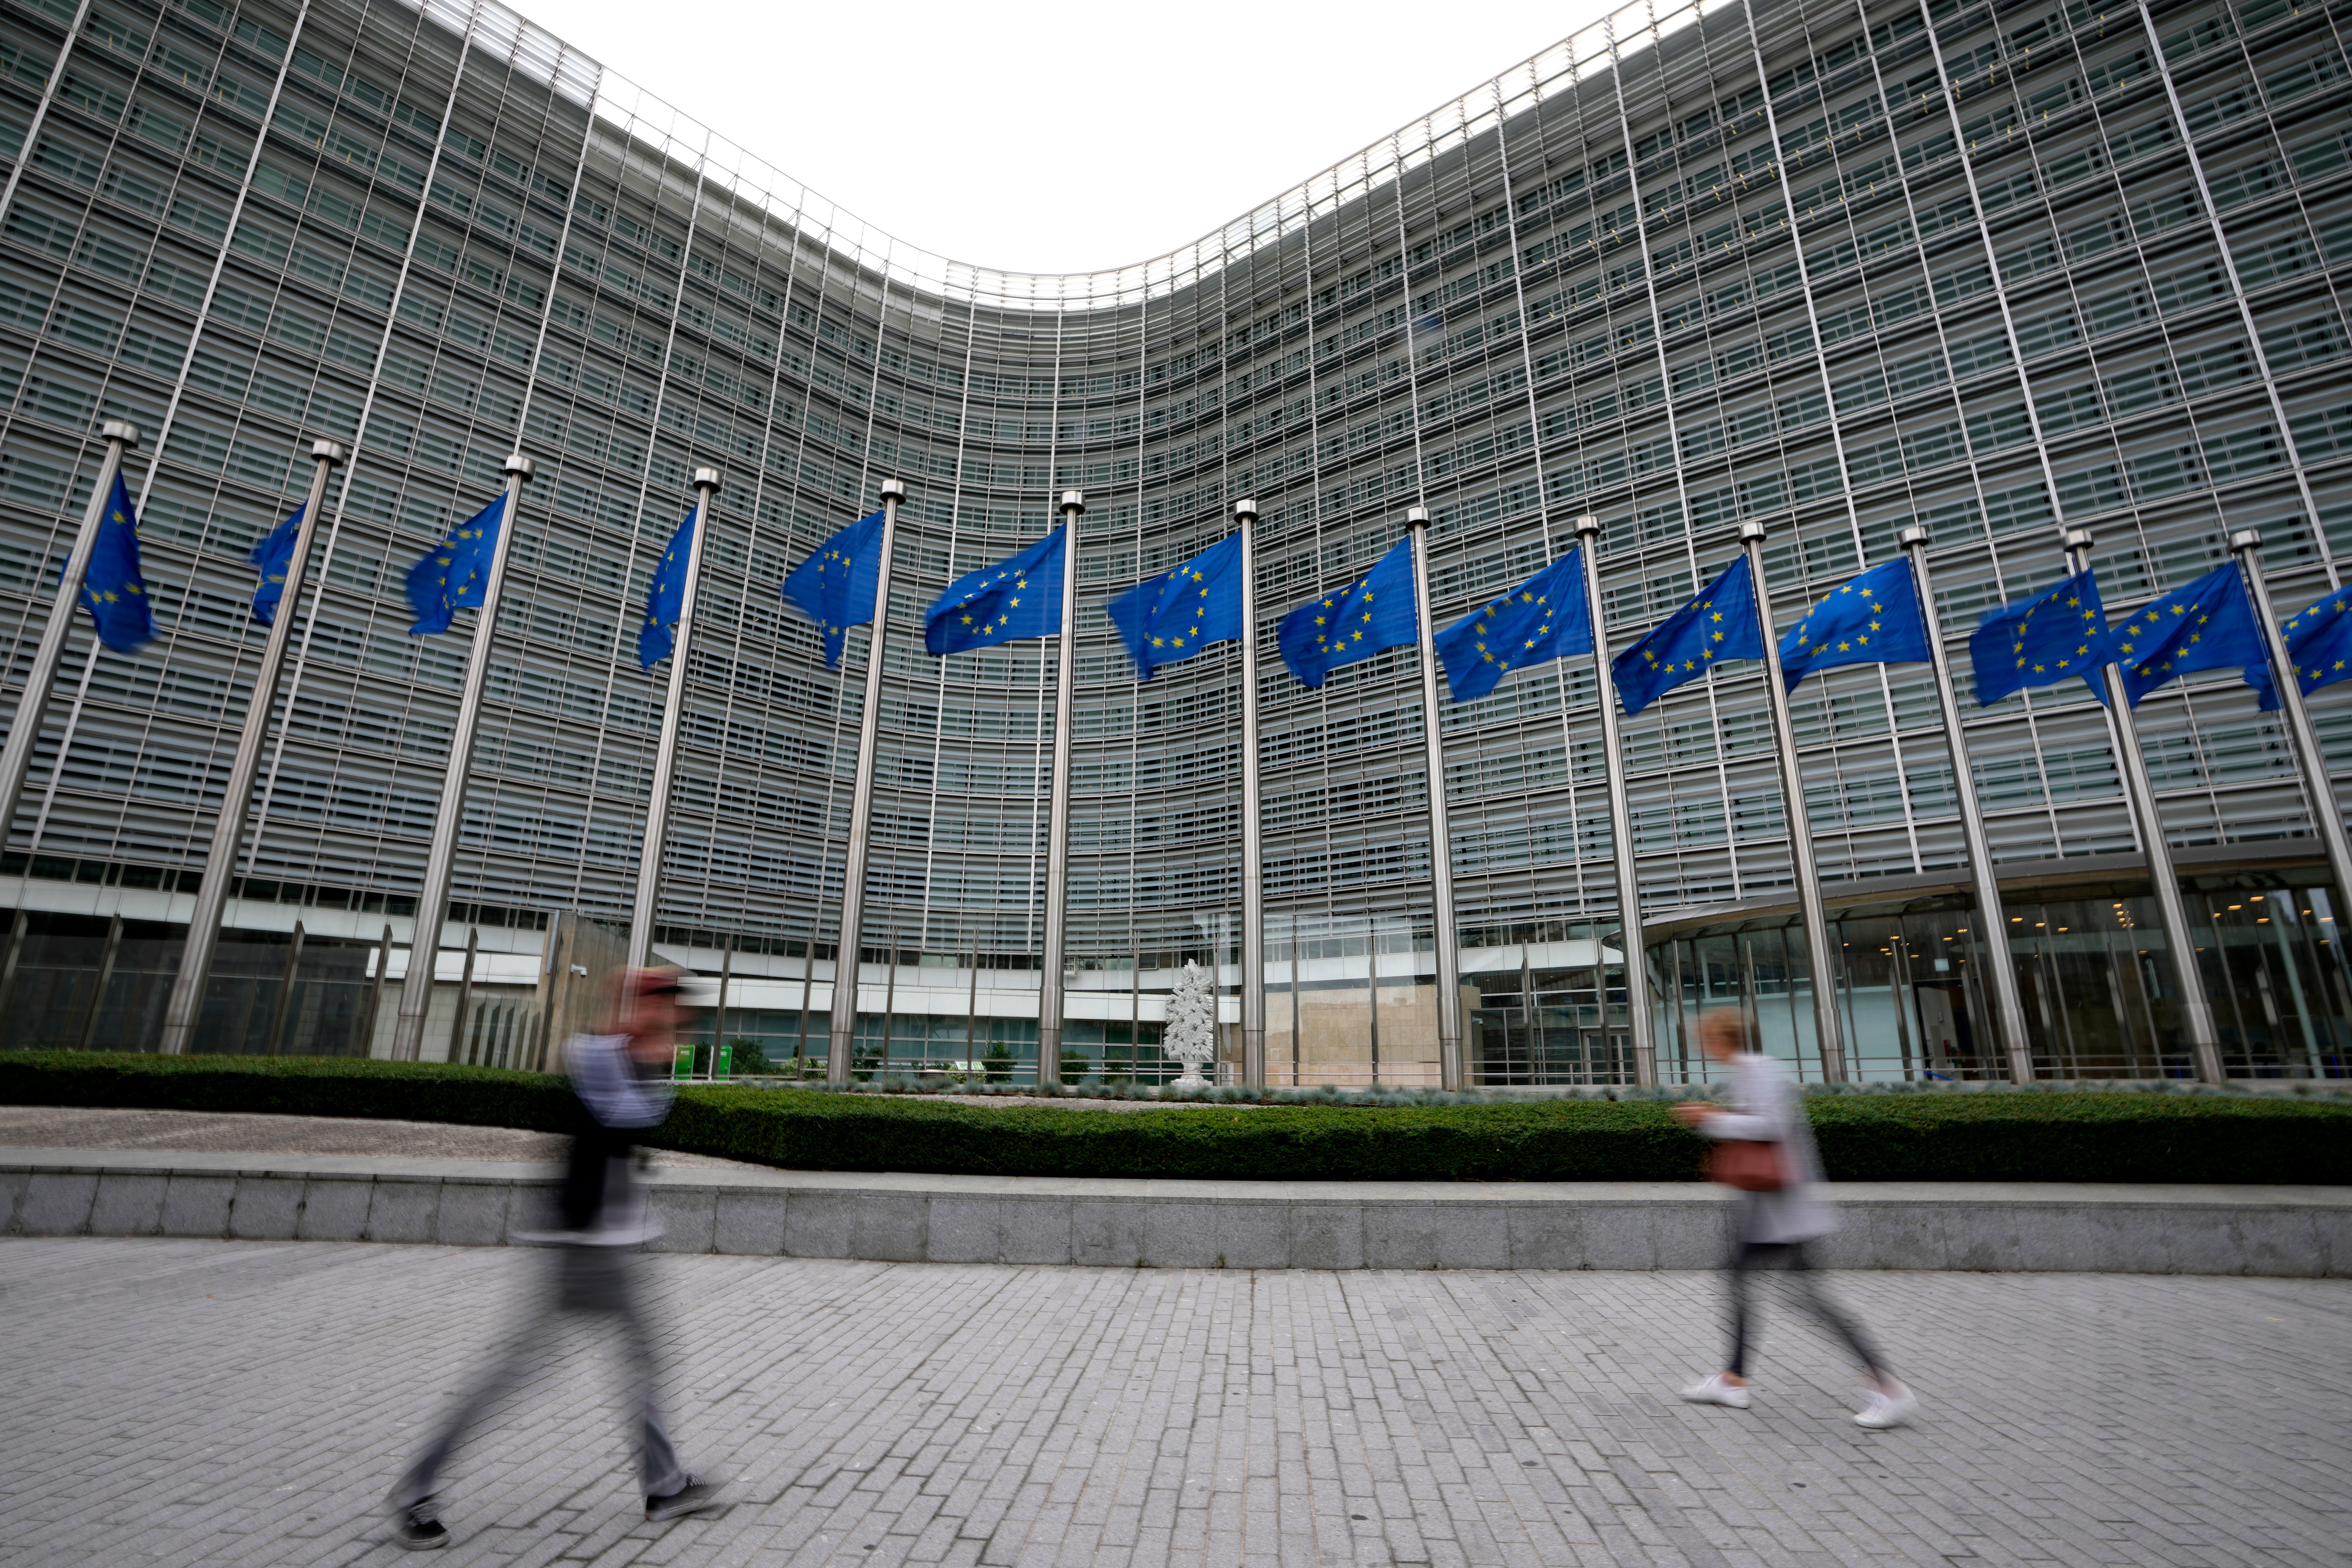 The EU headquarters in Brussels